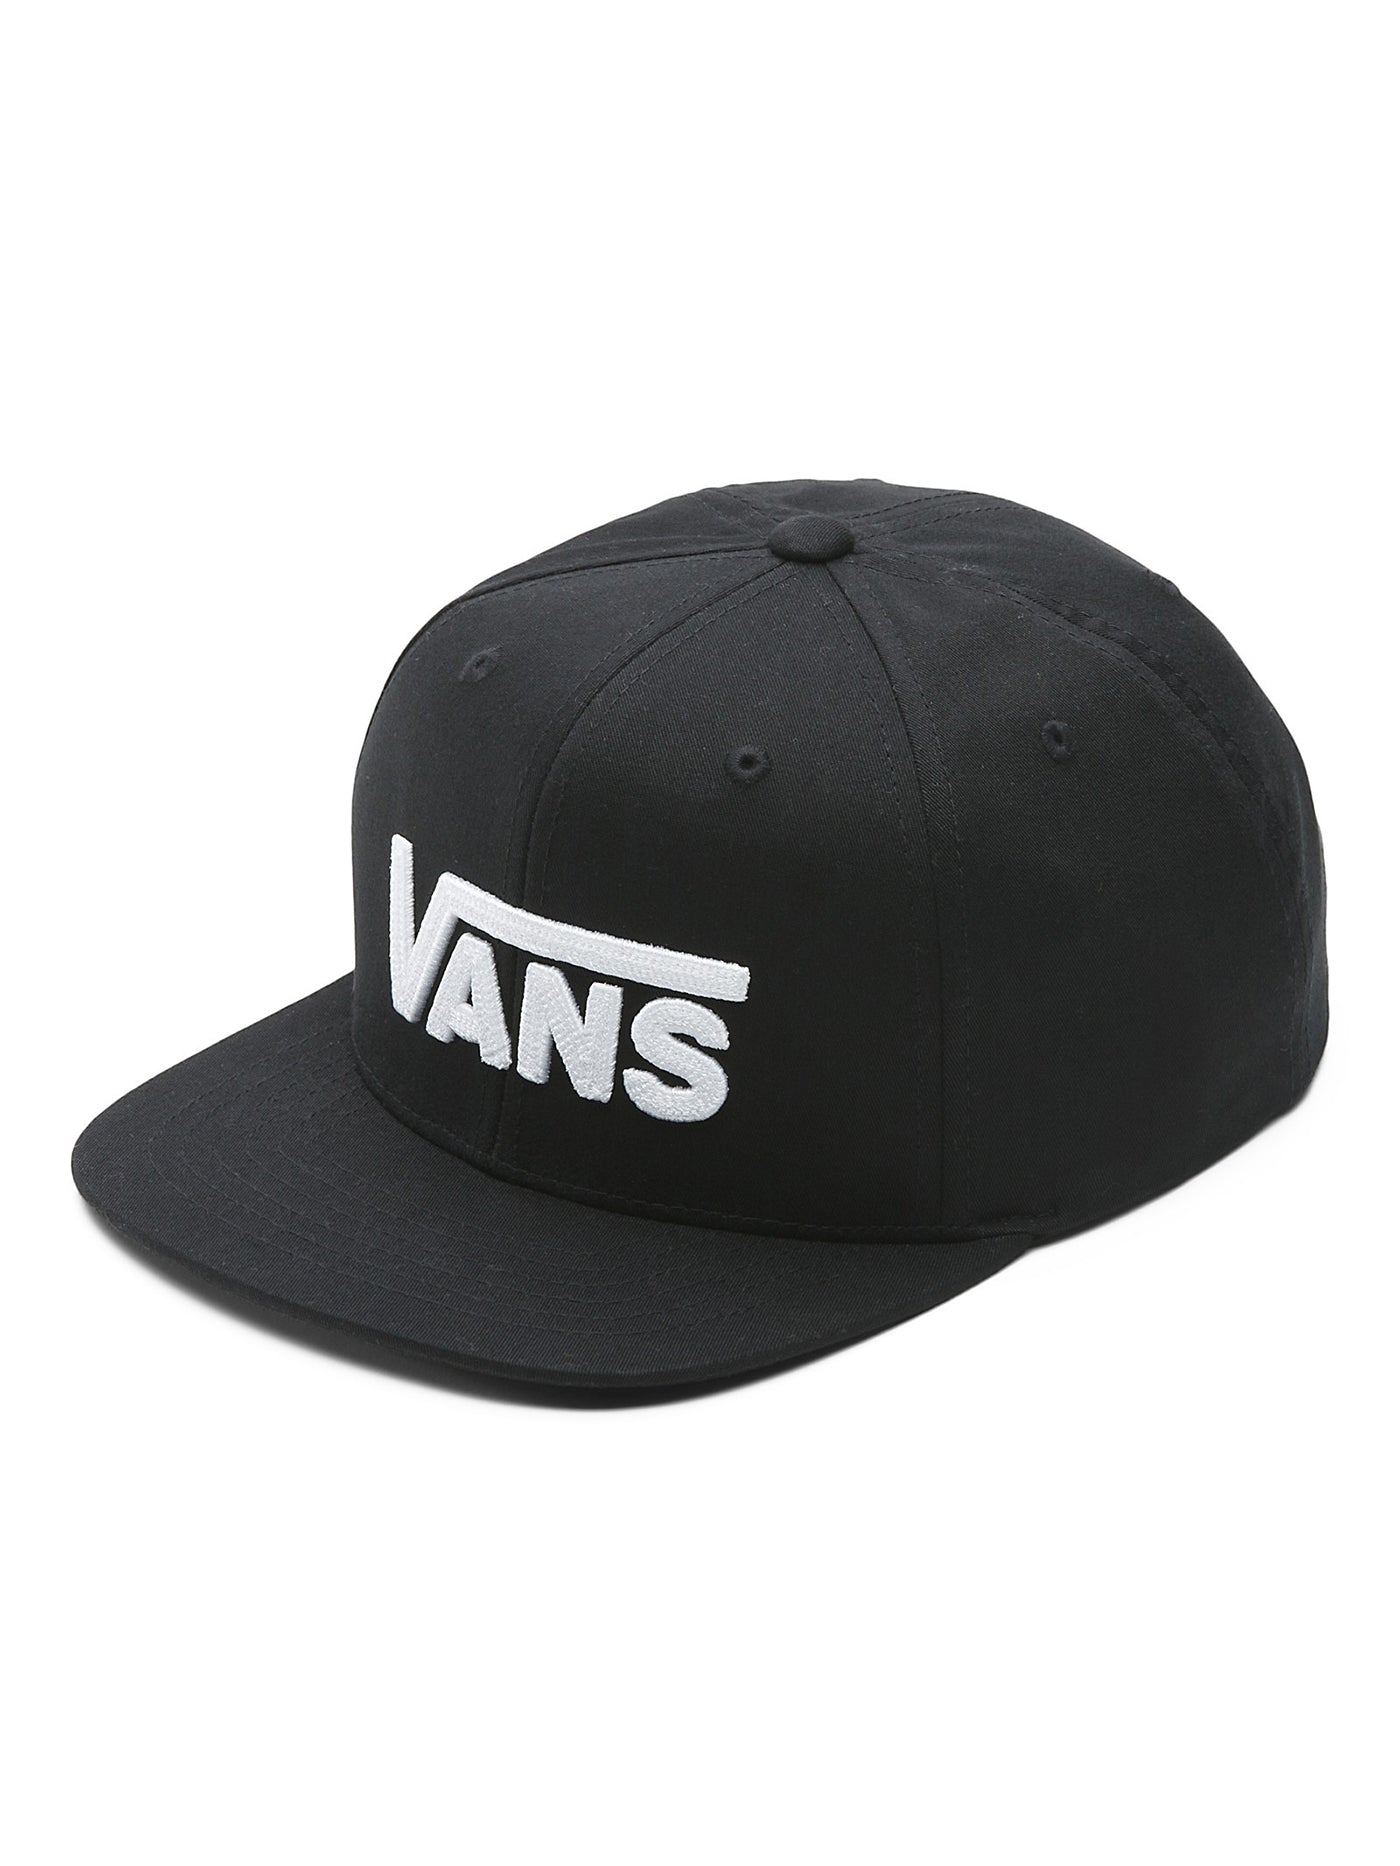 Vans Drop V II Snapback Hat